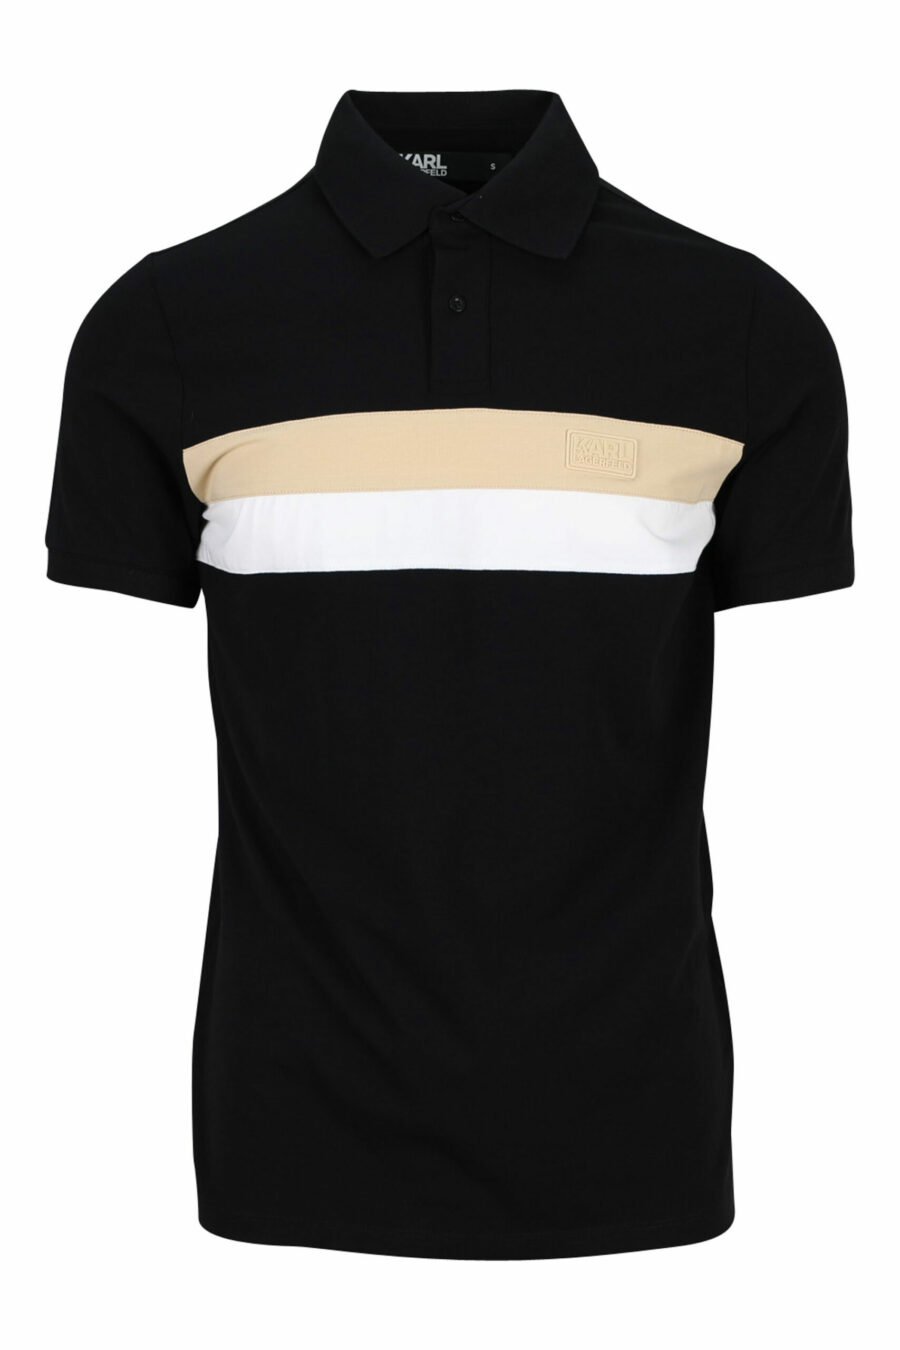 Schwarzes Poloshirt mit beige-weißem Streifen - 4062226399197 skaliert